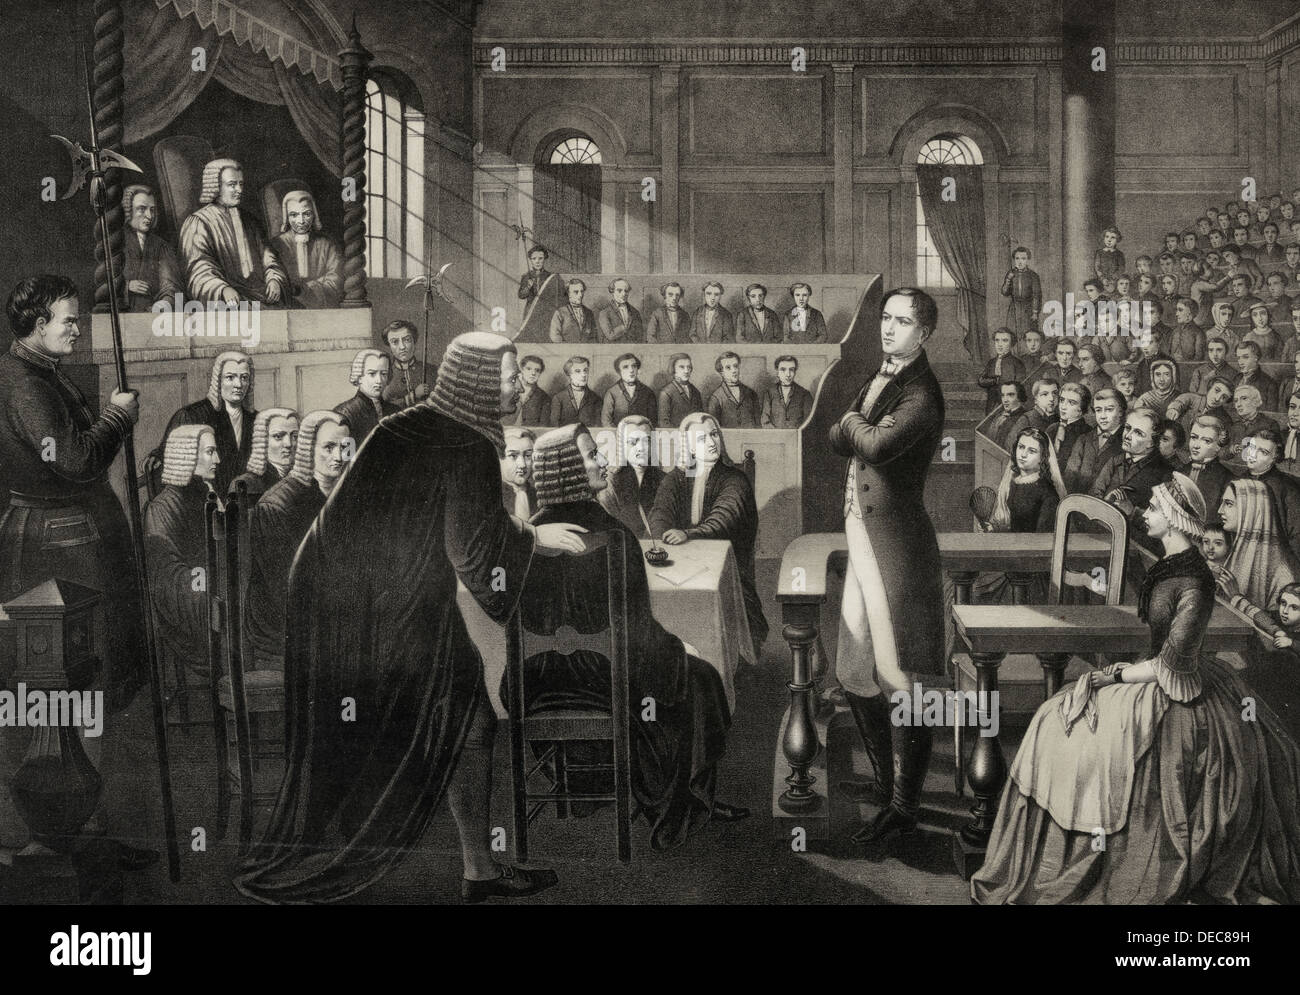 Testversion von Robert Emmet, Emmet Antworten auf das Urteil des Hochverrats, 19. September 1803 Stockfoto